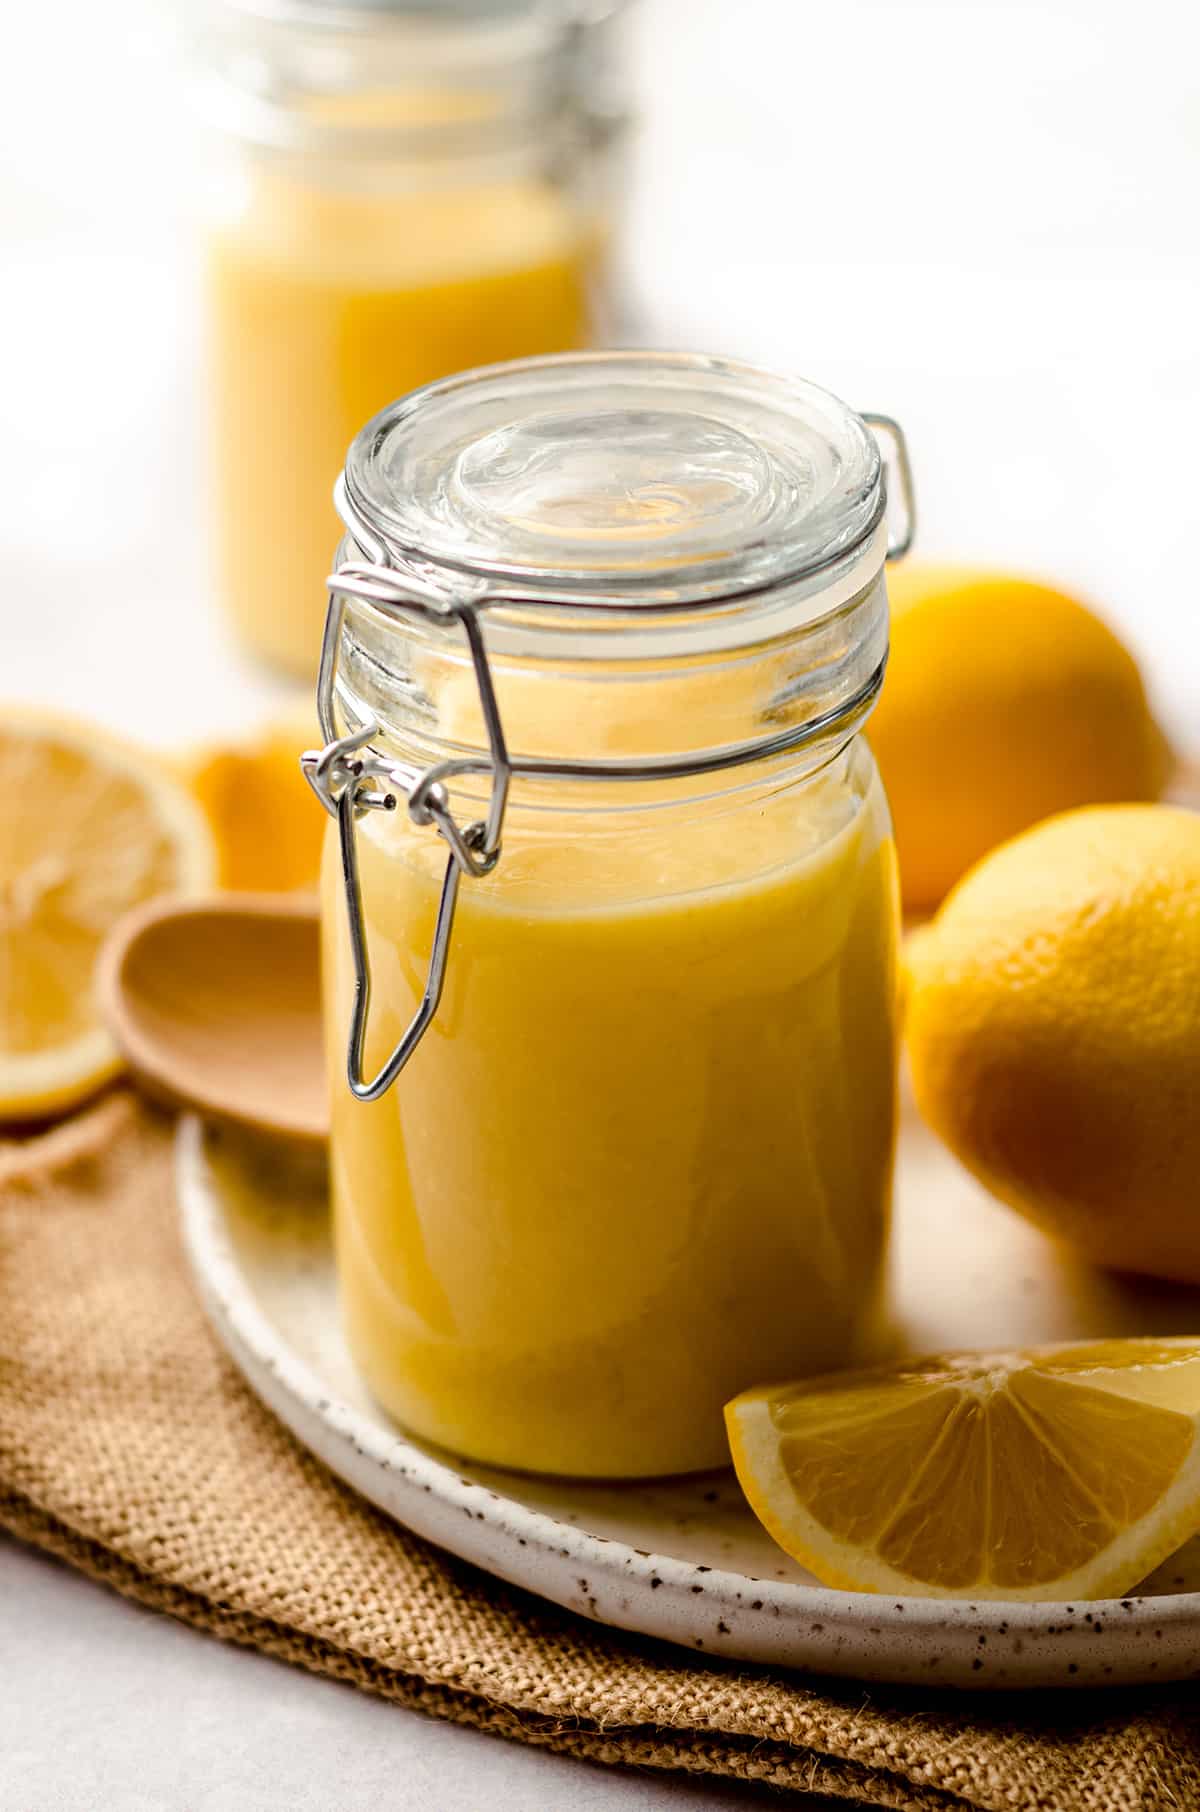 a jar of lemon curd on a plate with lemons